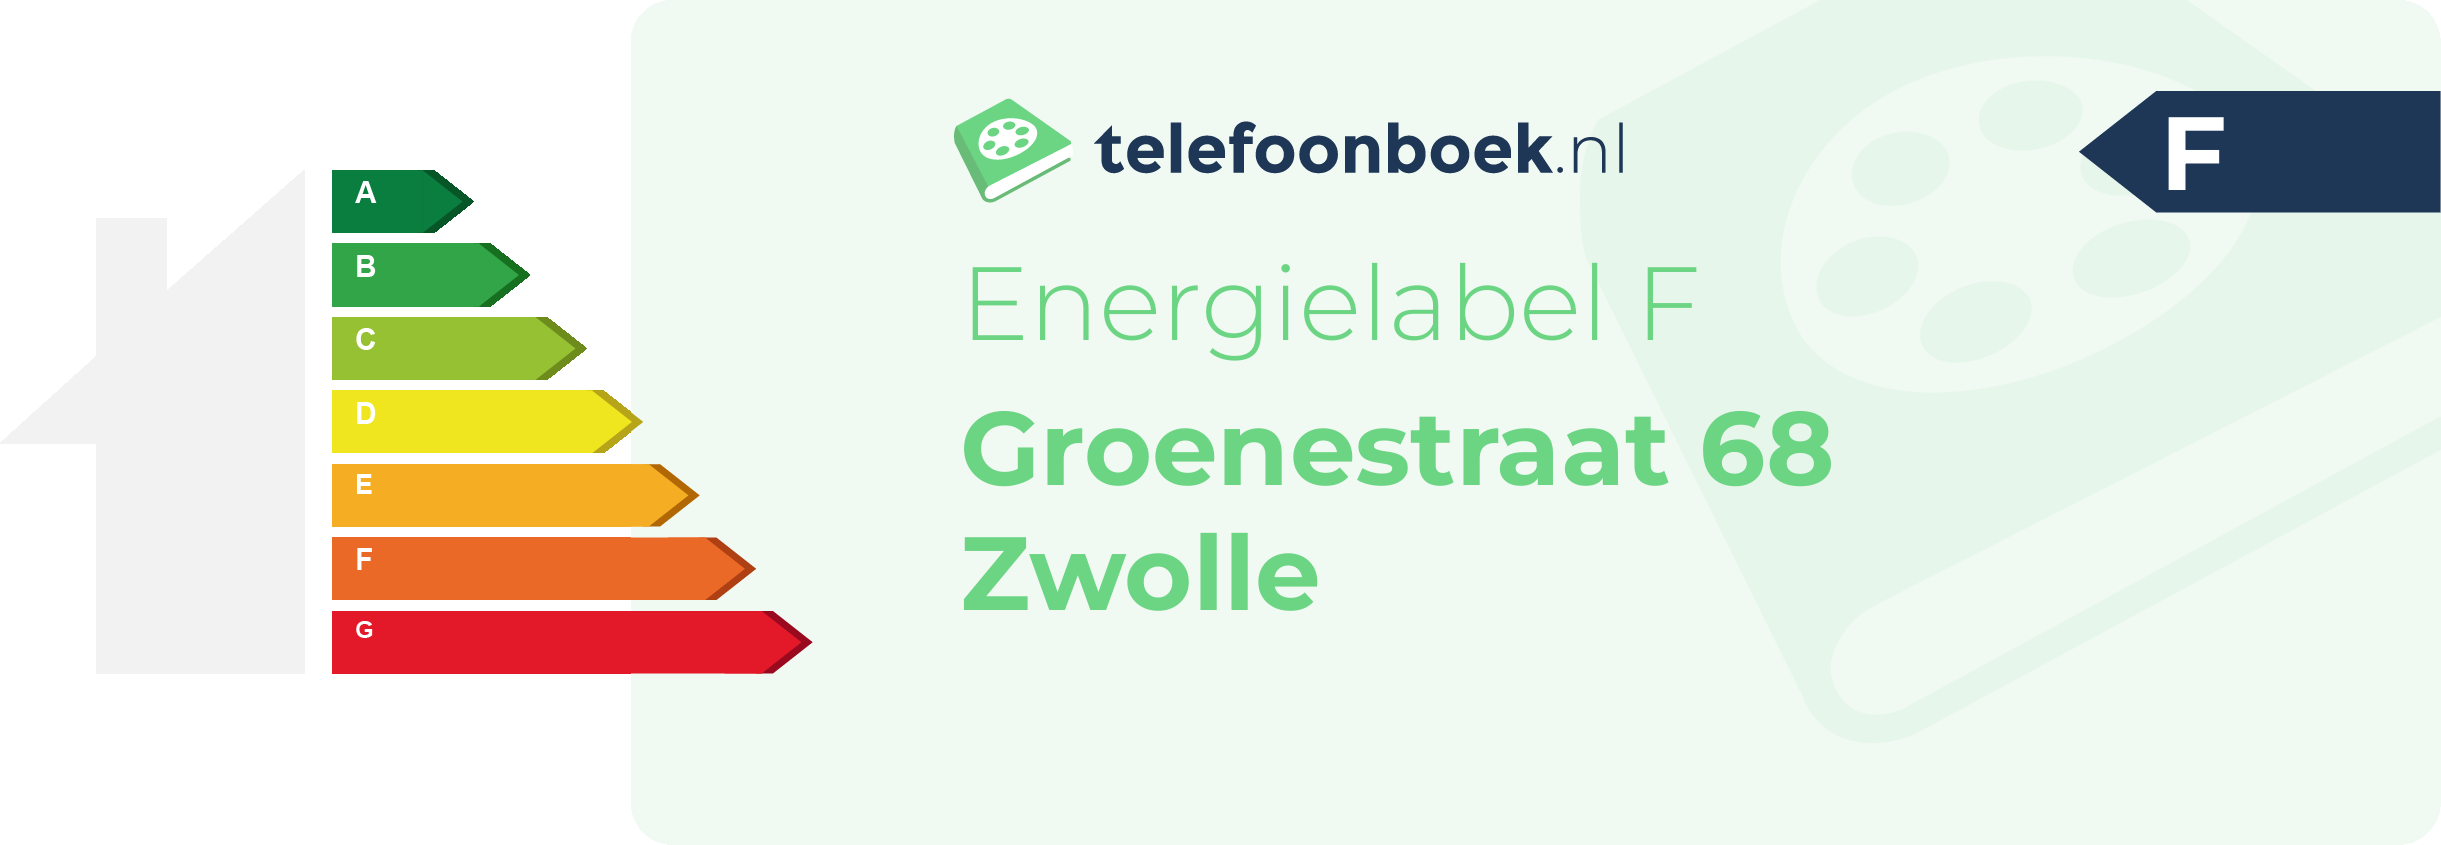 Energielabel Groenestraat 68 Zwolle